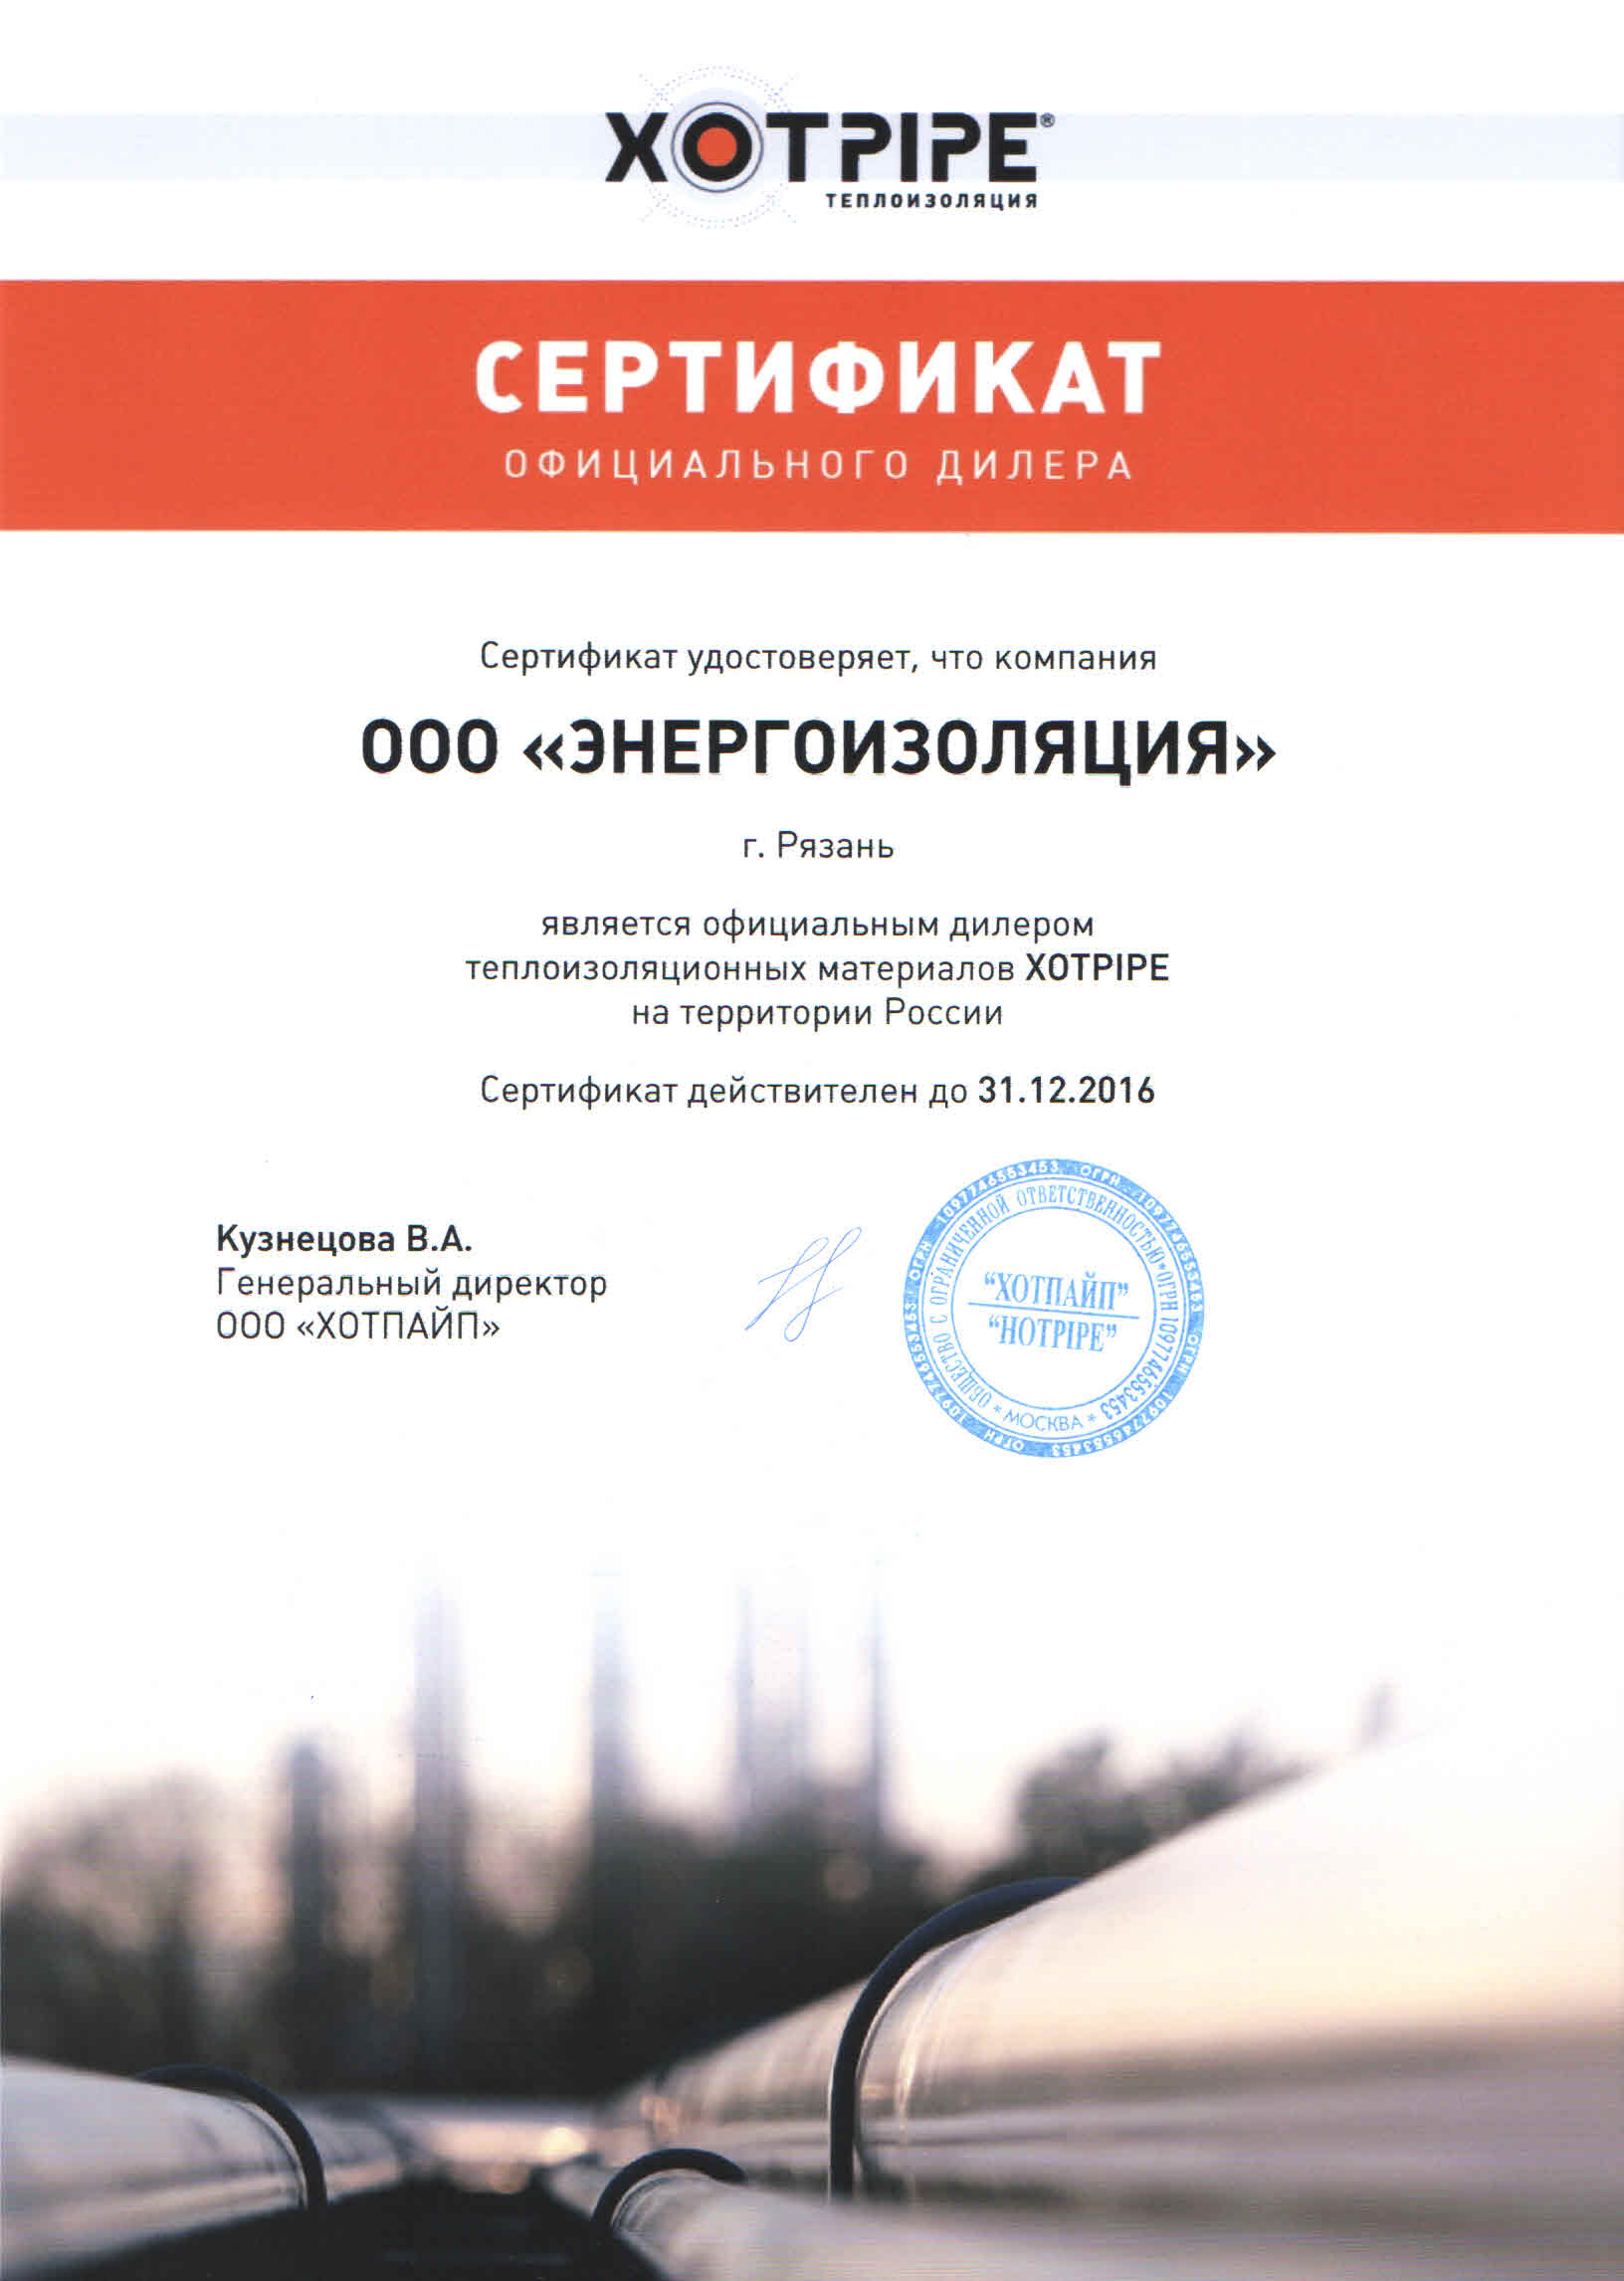 Сертификат официального дилера Хотпайп ЭнергоИзоляция 2016